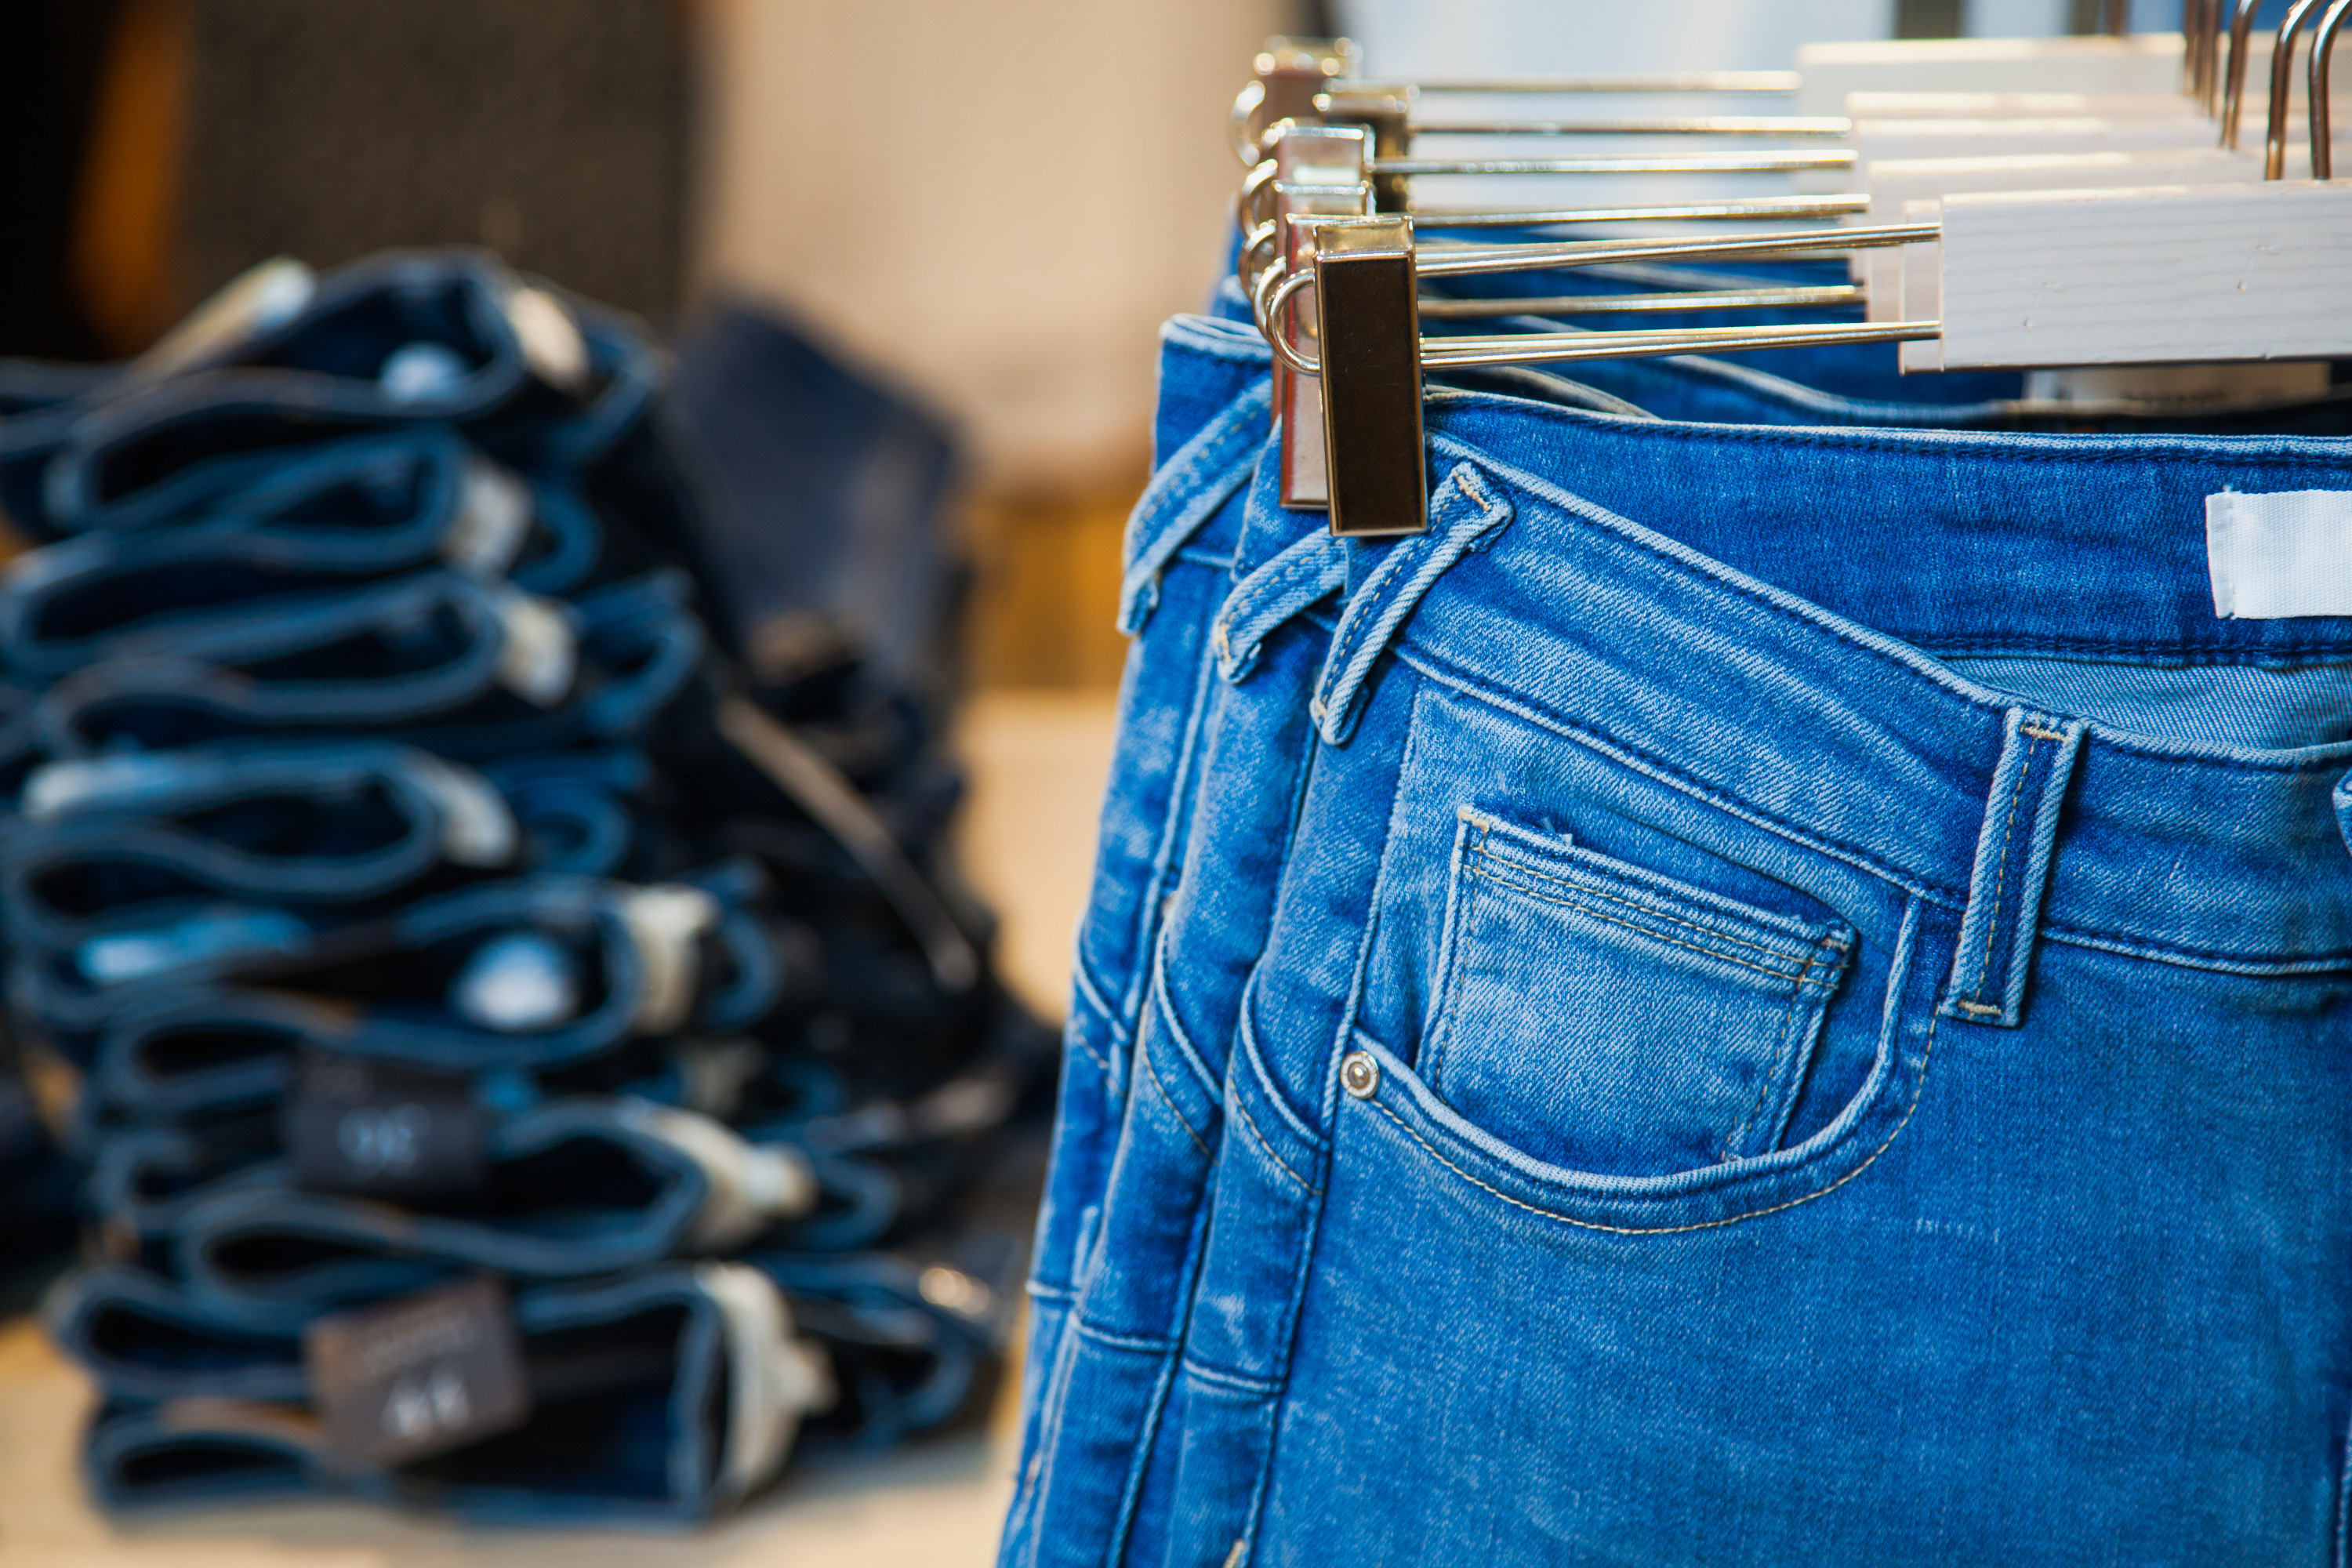 В магазин уже завезли актуальную весеннюю коллекцию 2022 года, в наличии самые трендовые новинки мужских и женских джинсов